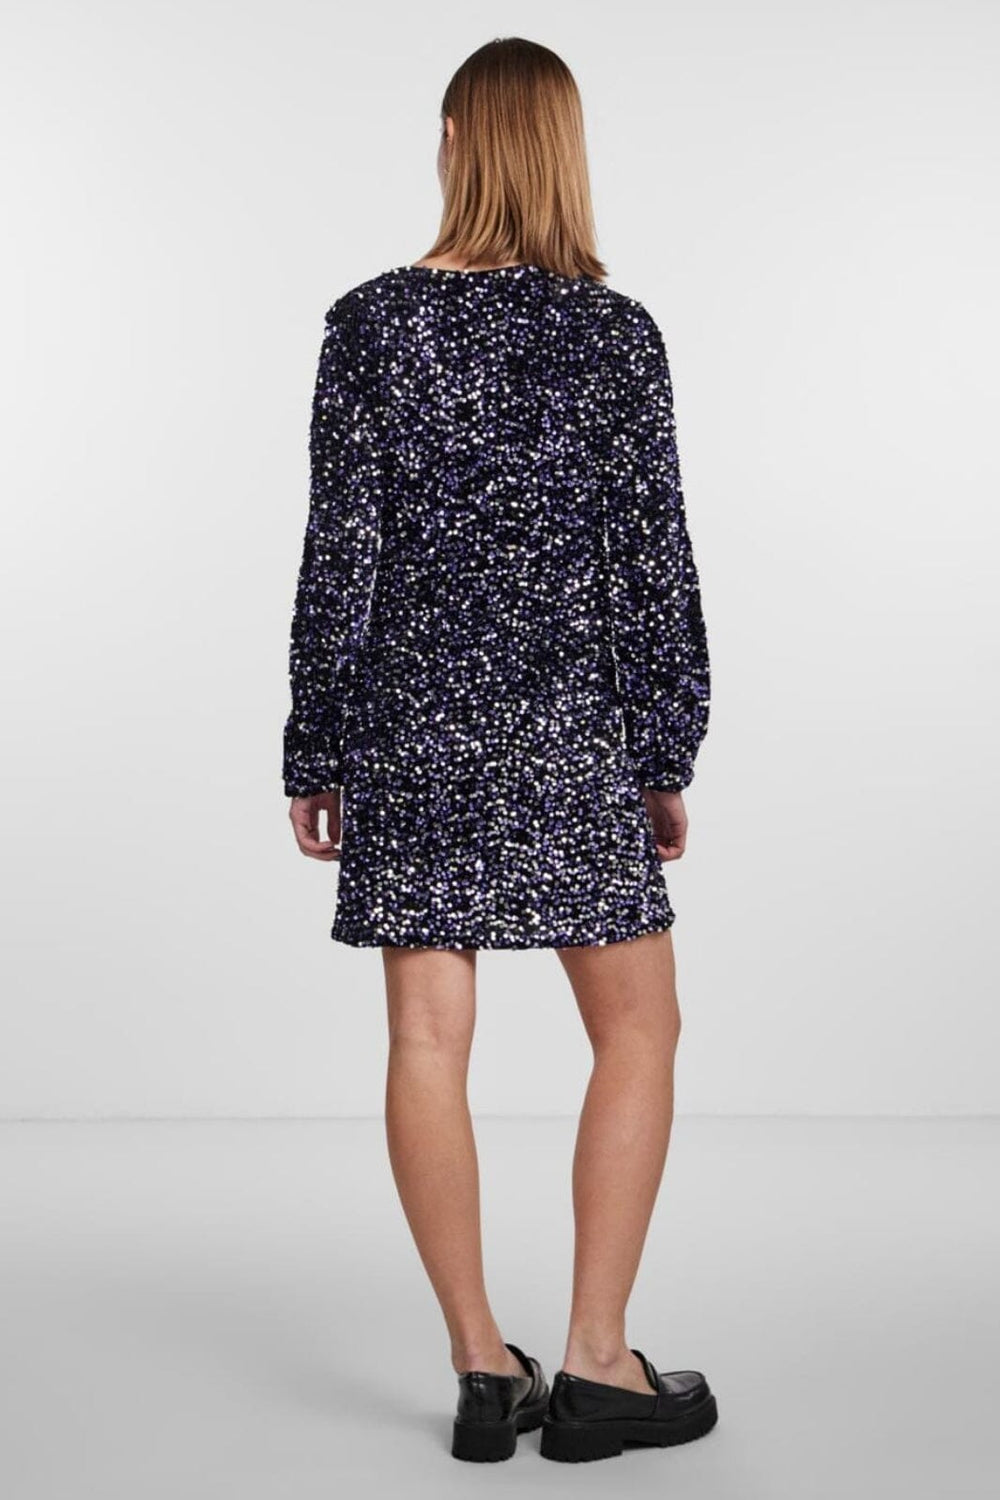 Pieces - Pckam Ls Wrap Dress - 4372295 Black Purple Silver Sequins Kjoler 